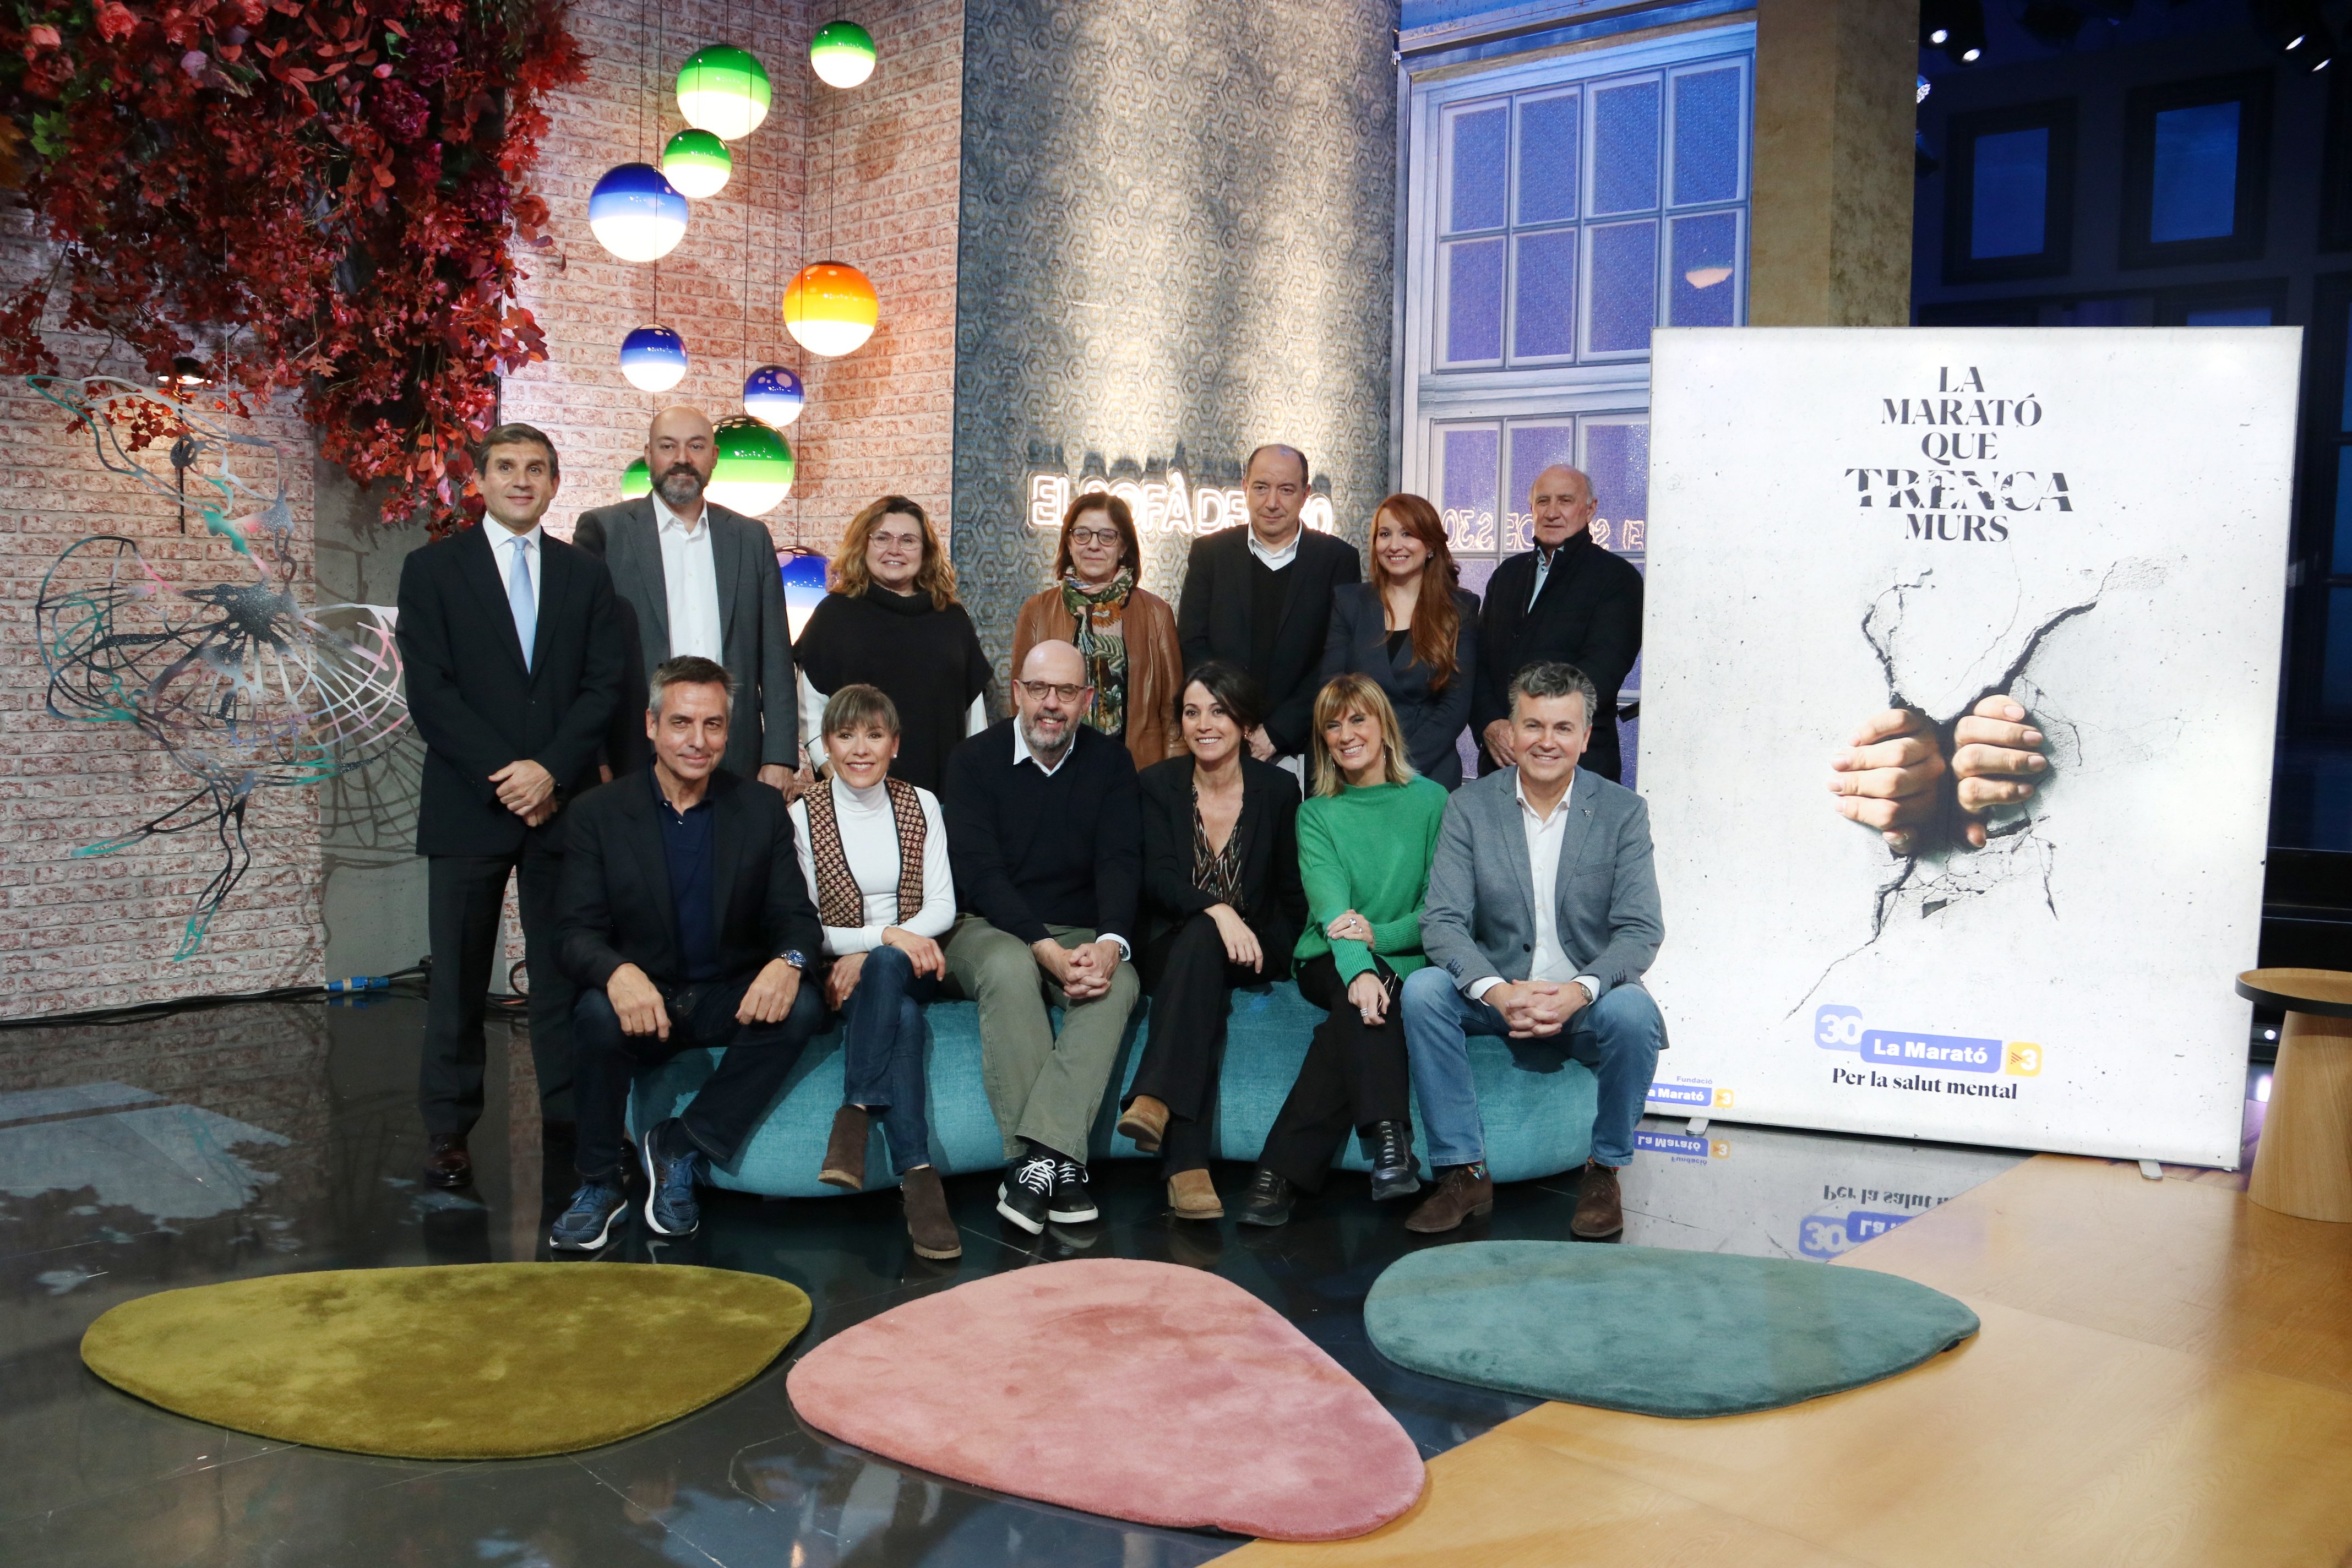 La 30a edició de la Marató de TV3 recapta més de 9 milions d'euros